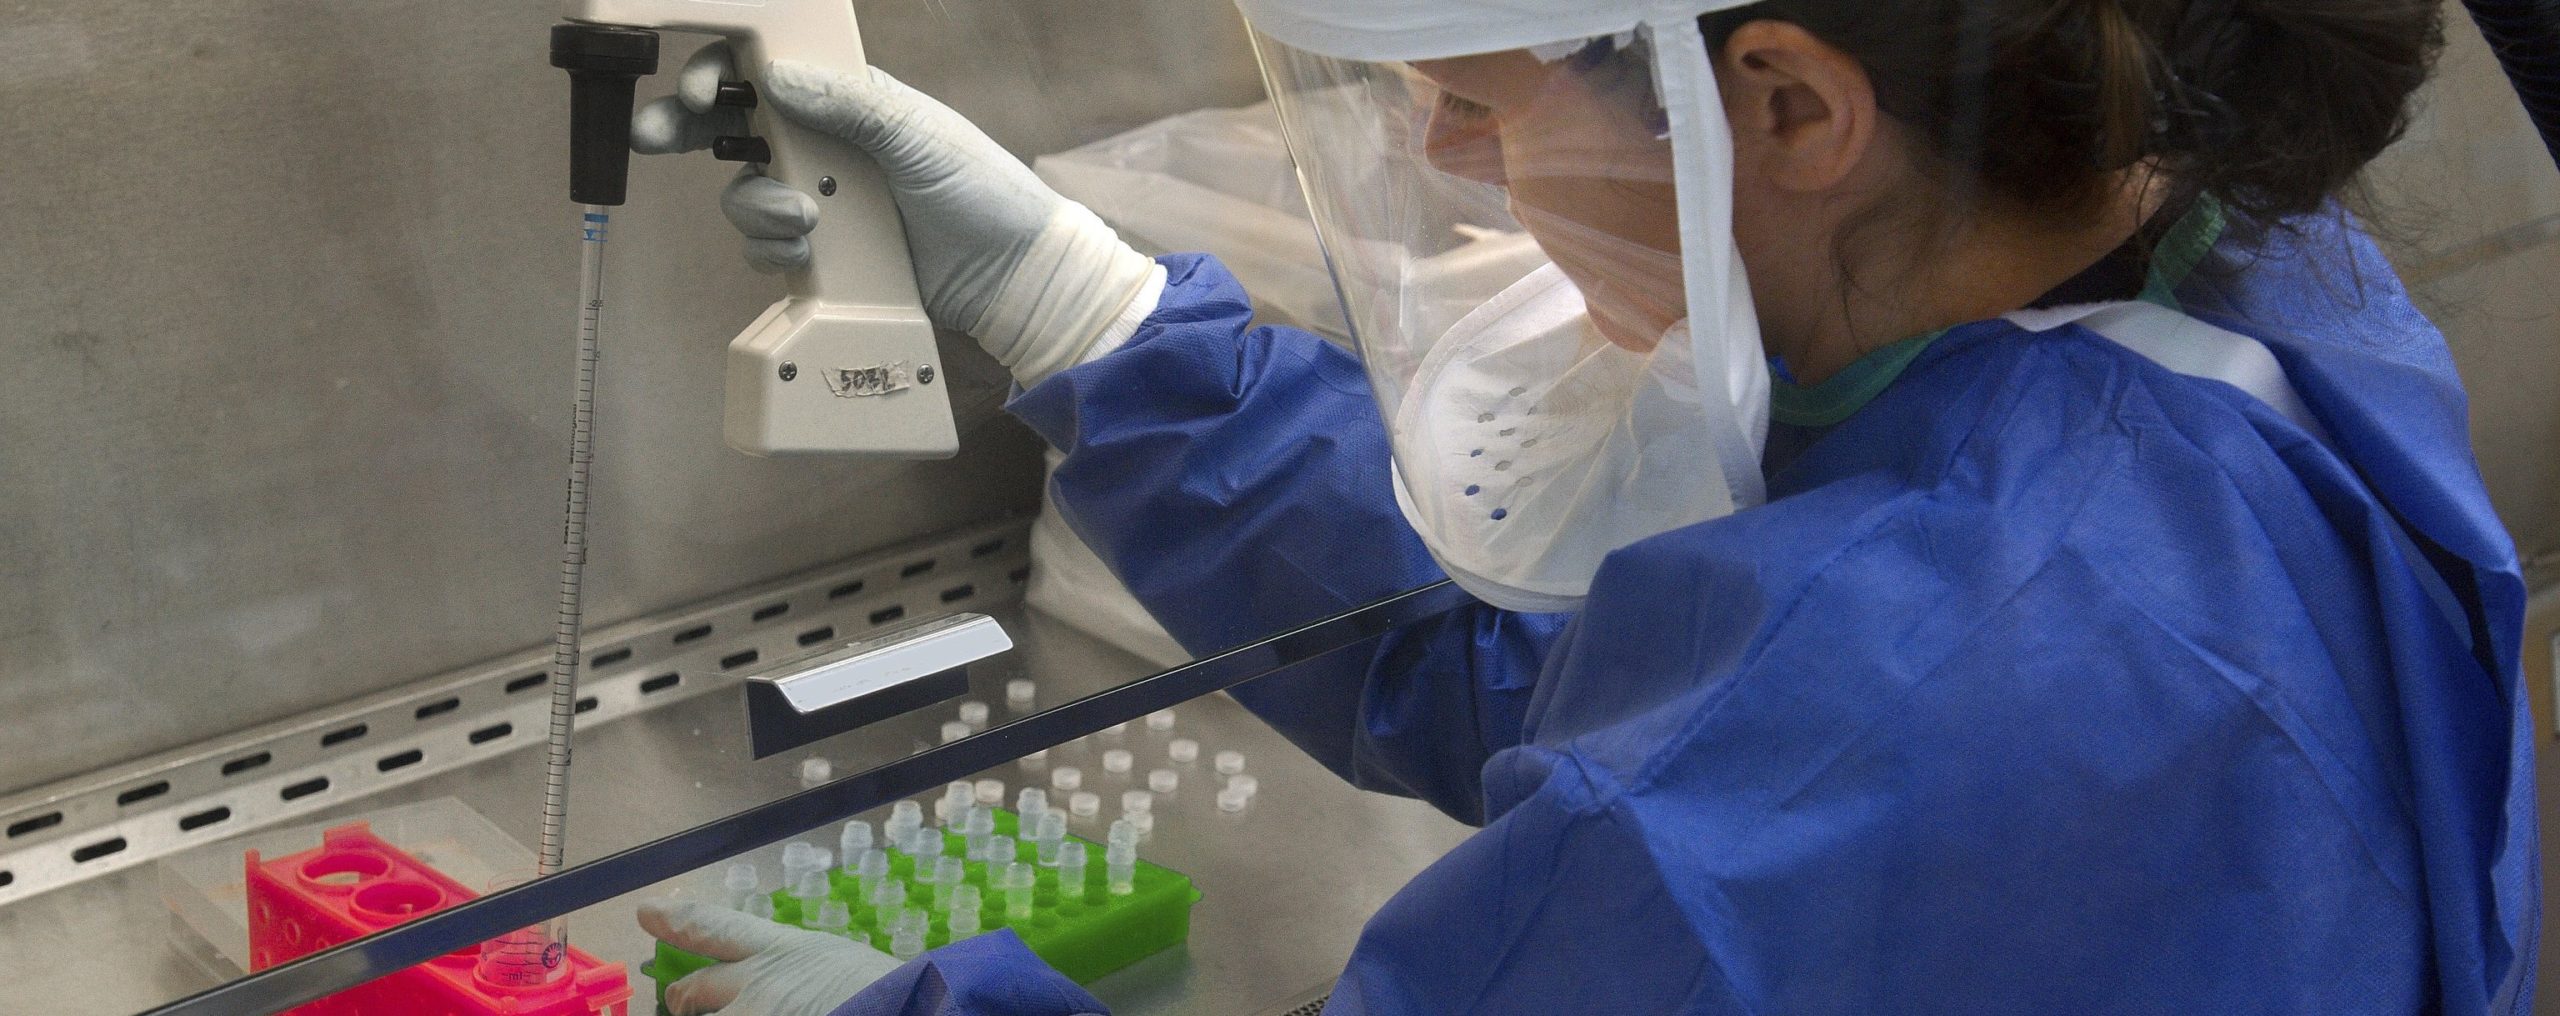 ¿Por qué preocupa el virus H5N1 a los expertos?...